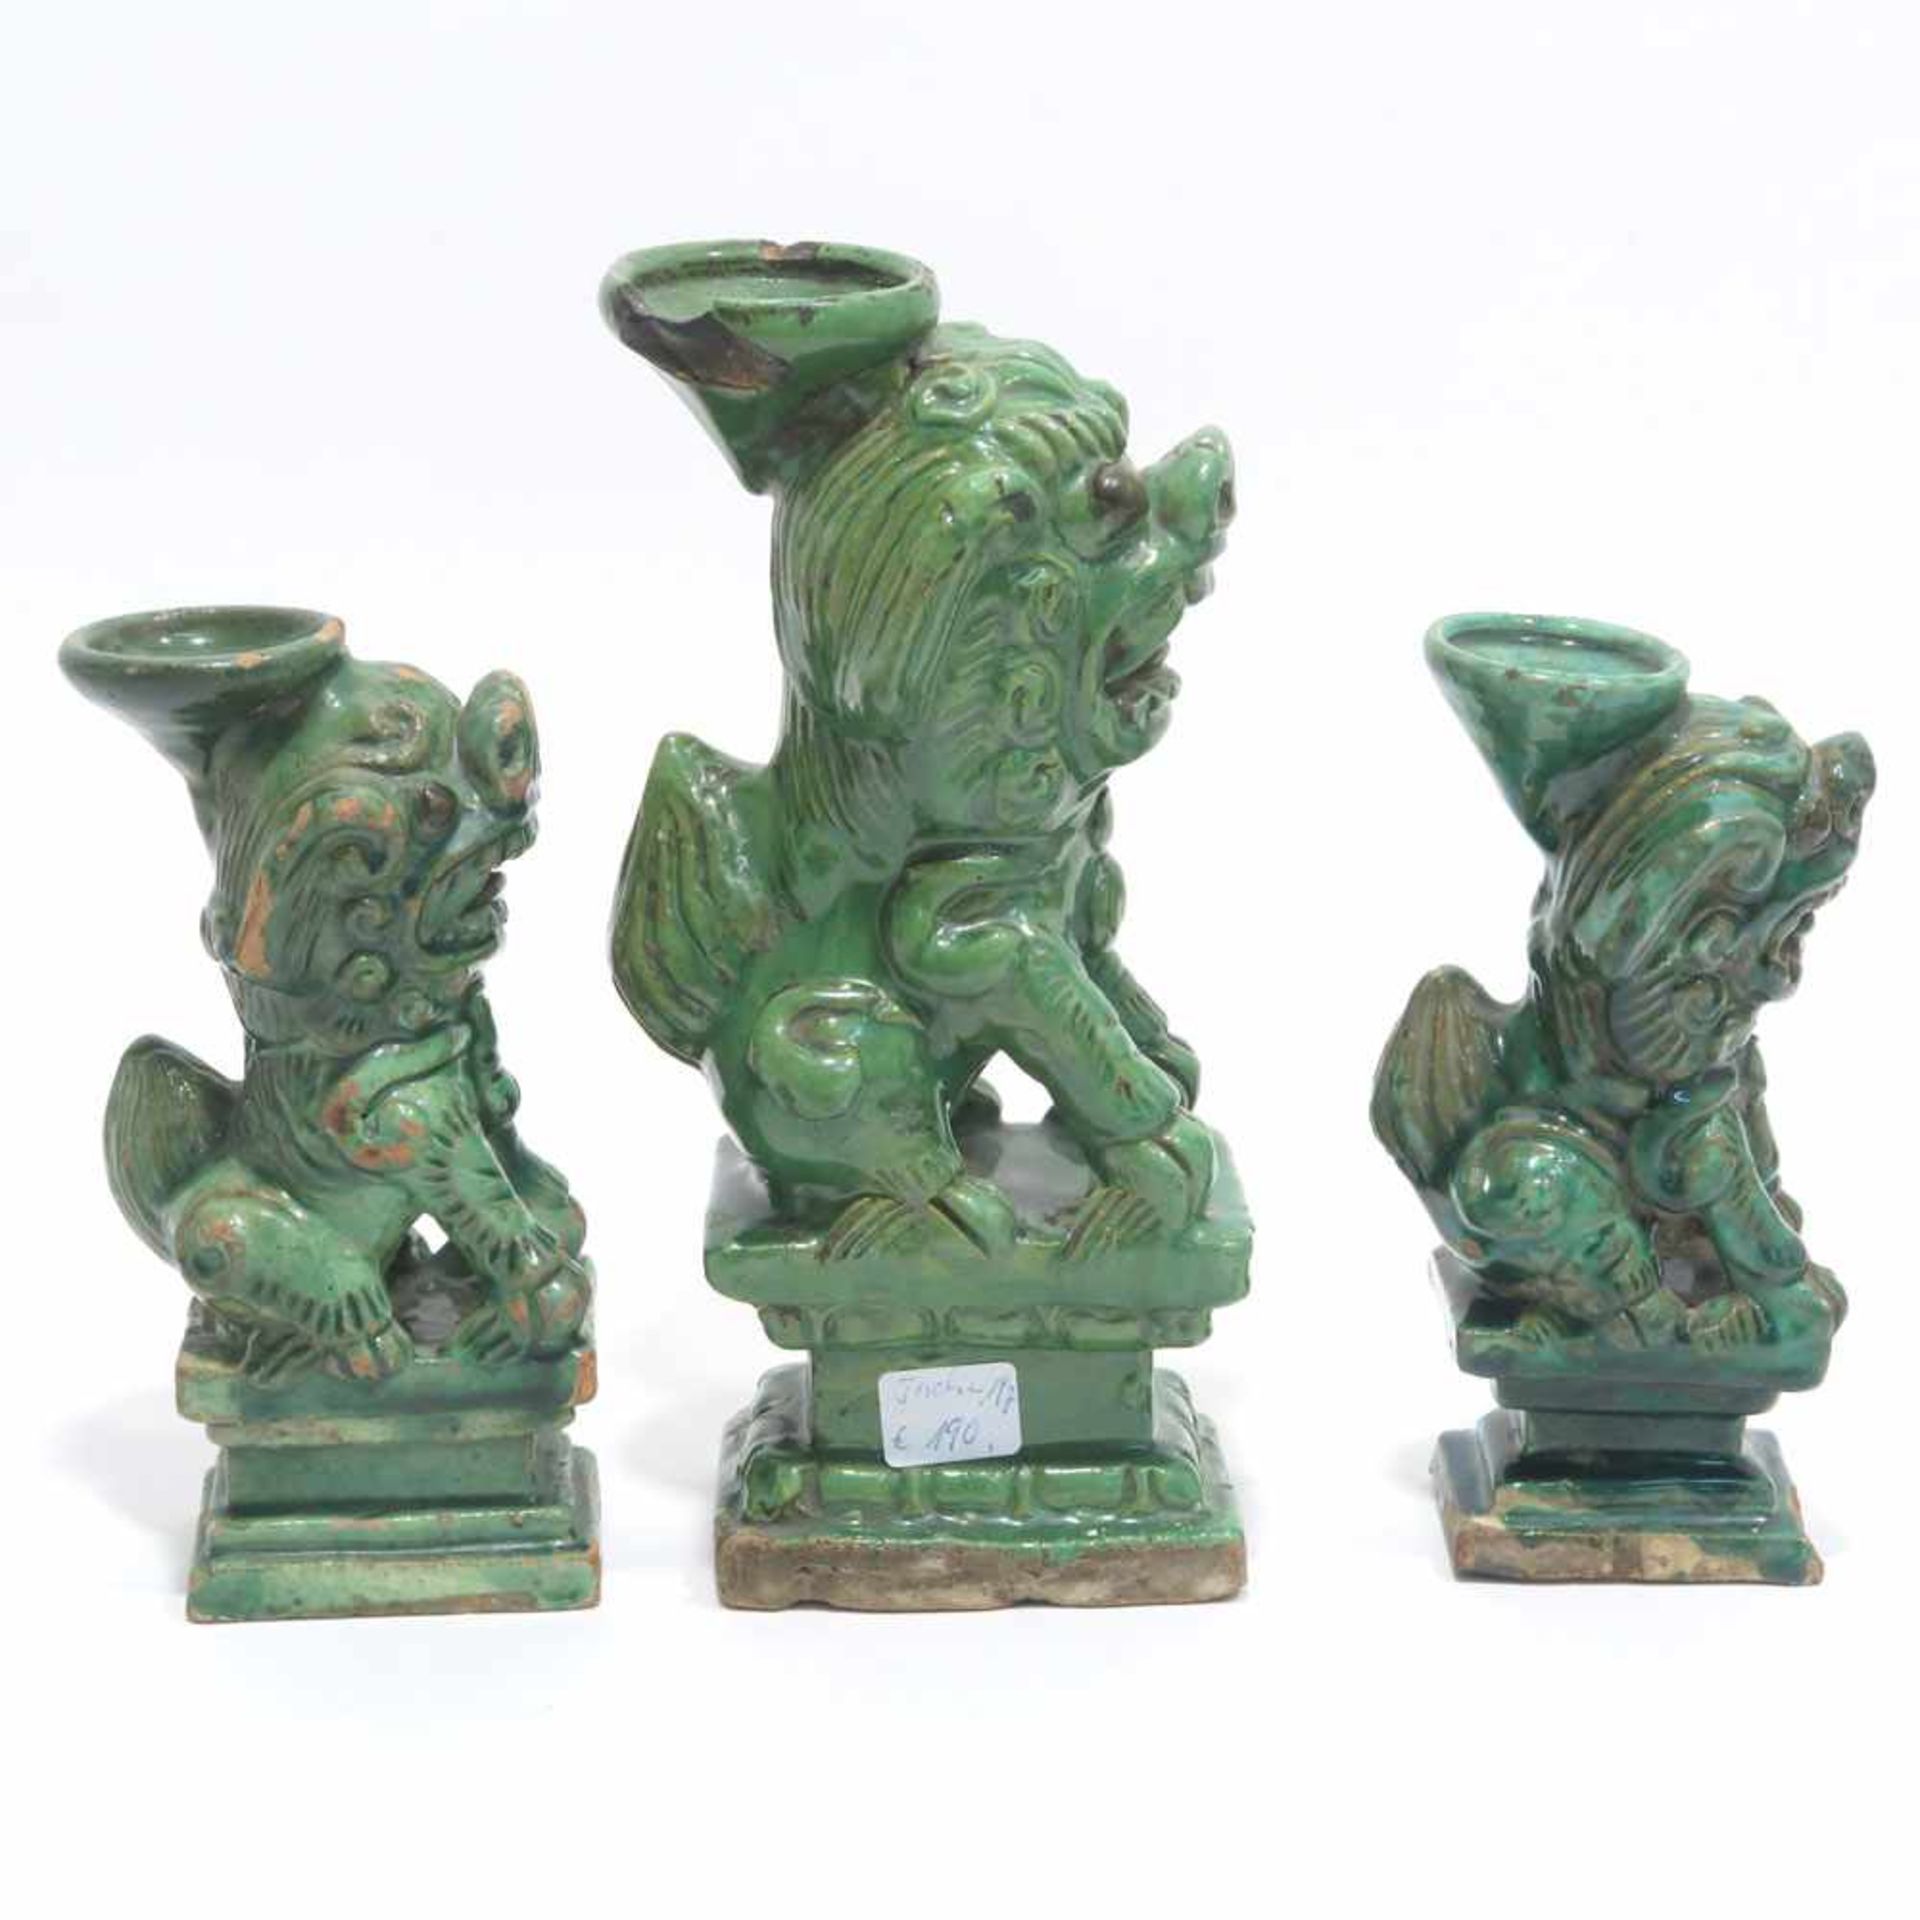 Drei Fo-HundeChina. Keramik, roter Scherben, grün glasiert. Best. H. 15,5 cm bis 21 cm.- - -26. - Bild 2 aus 4